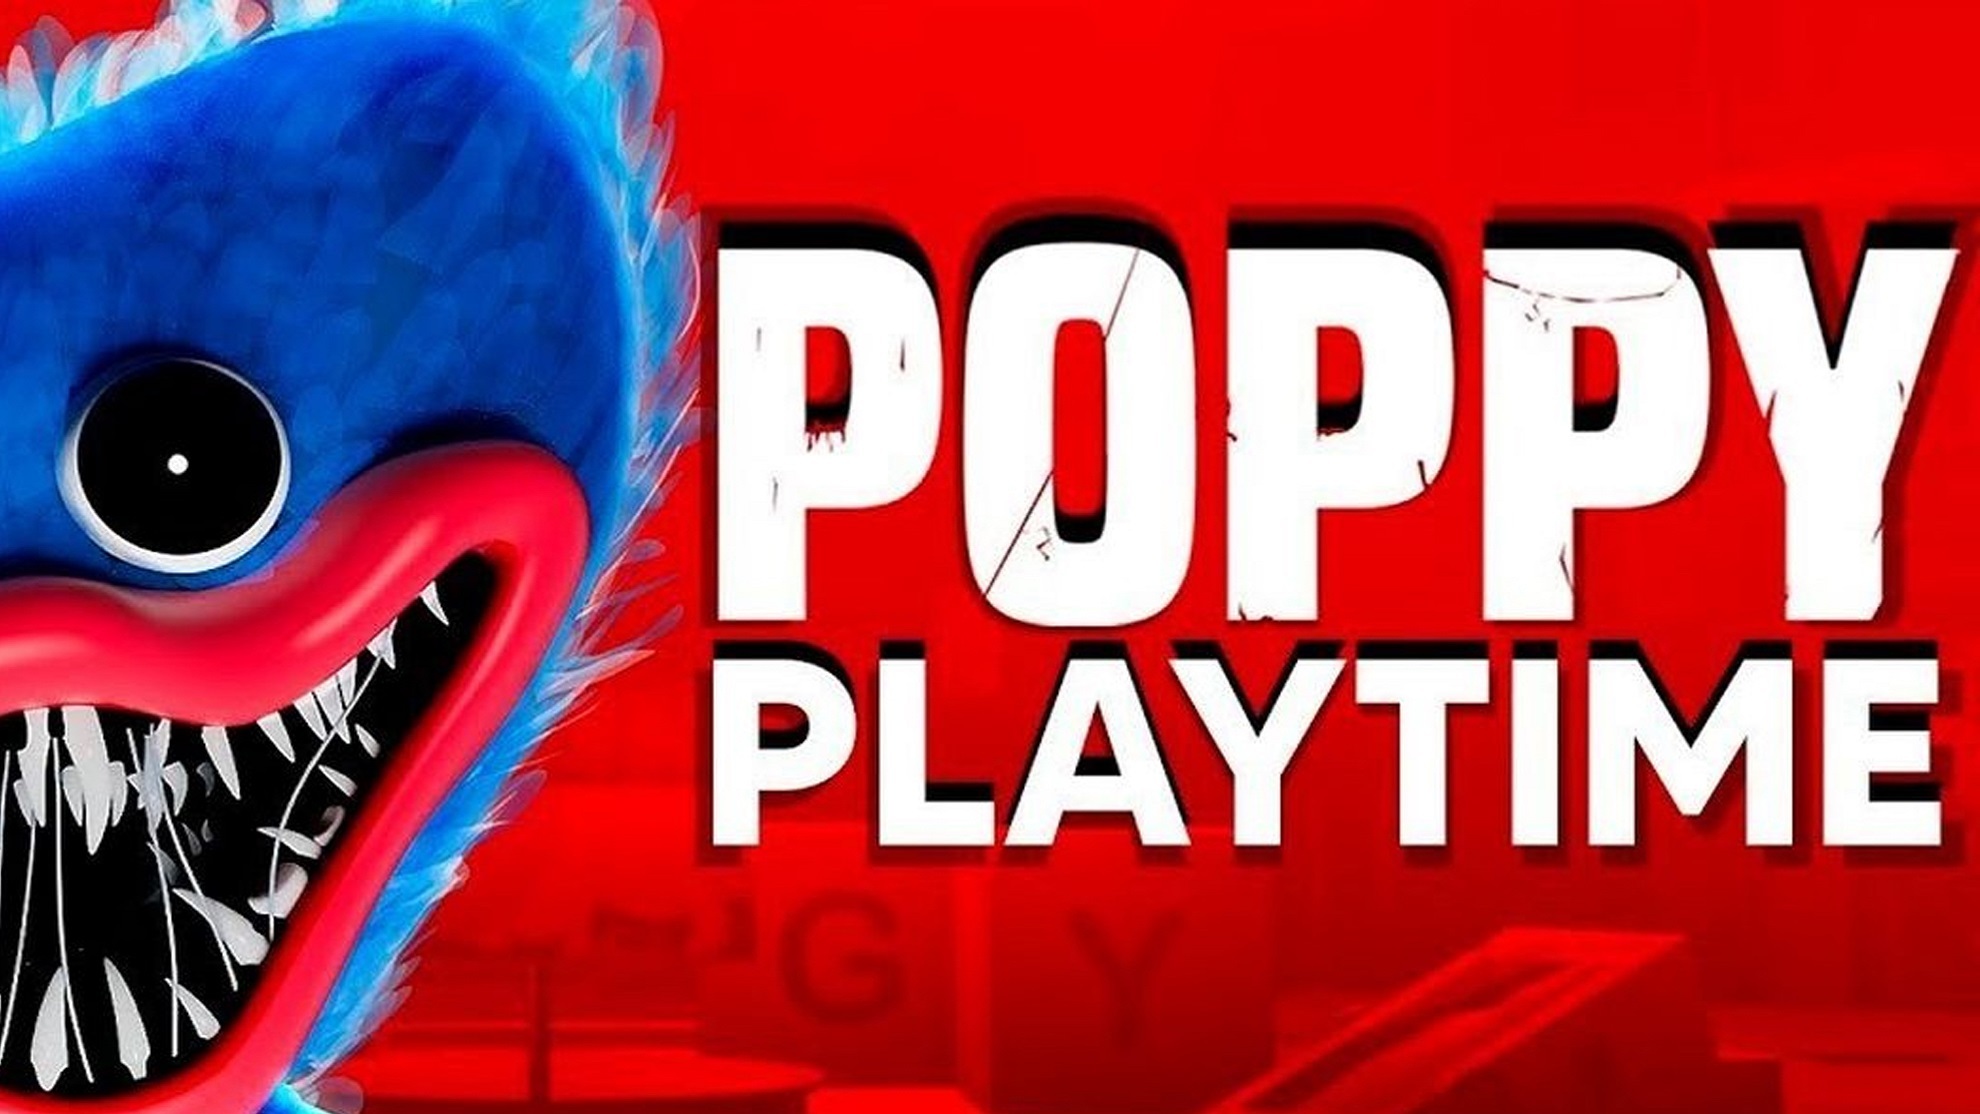 Jugamos Poppy Playtime, el juego de terror de moda. ¿Es para tanto?